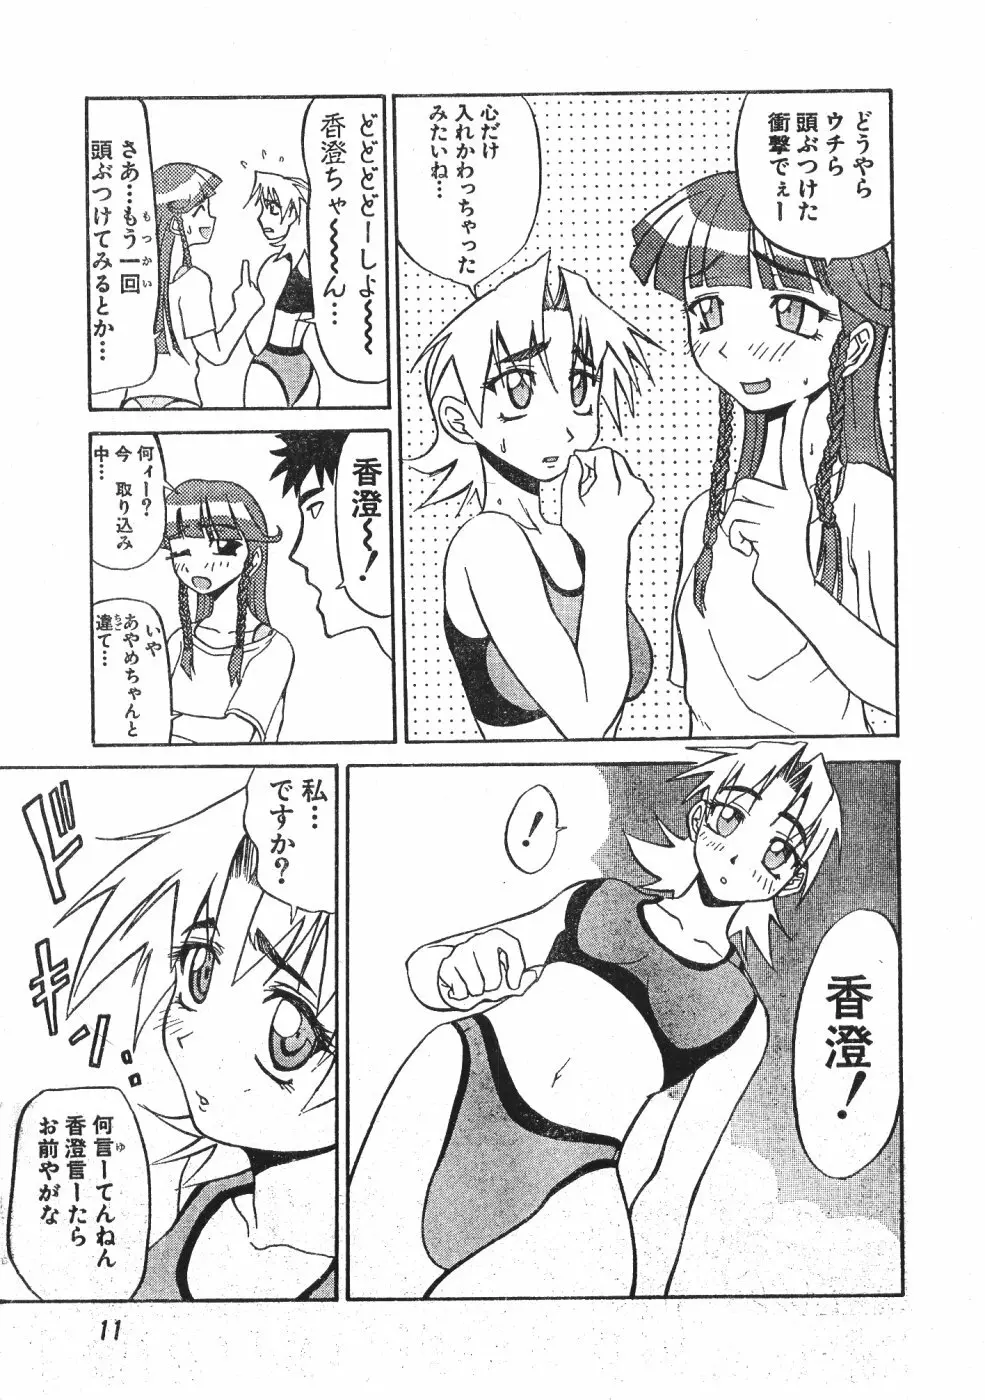 Men’s Dolphin Vol 12 2000-08-01 11ページ